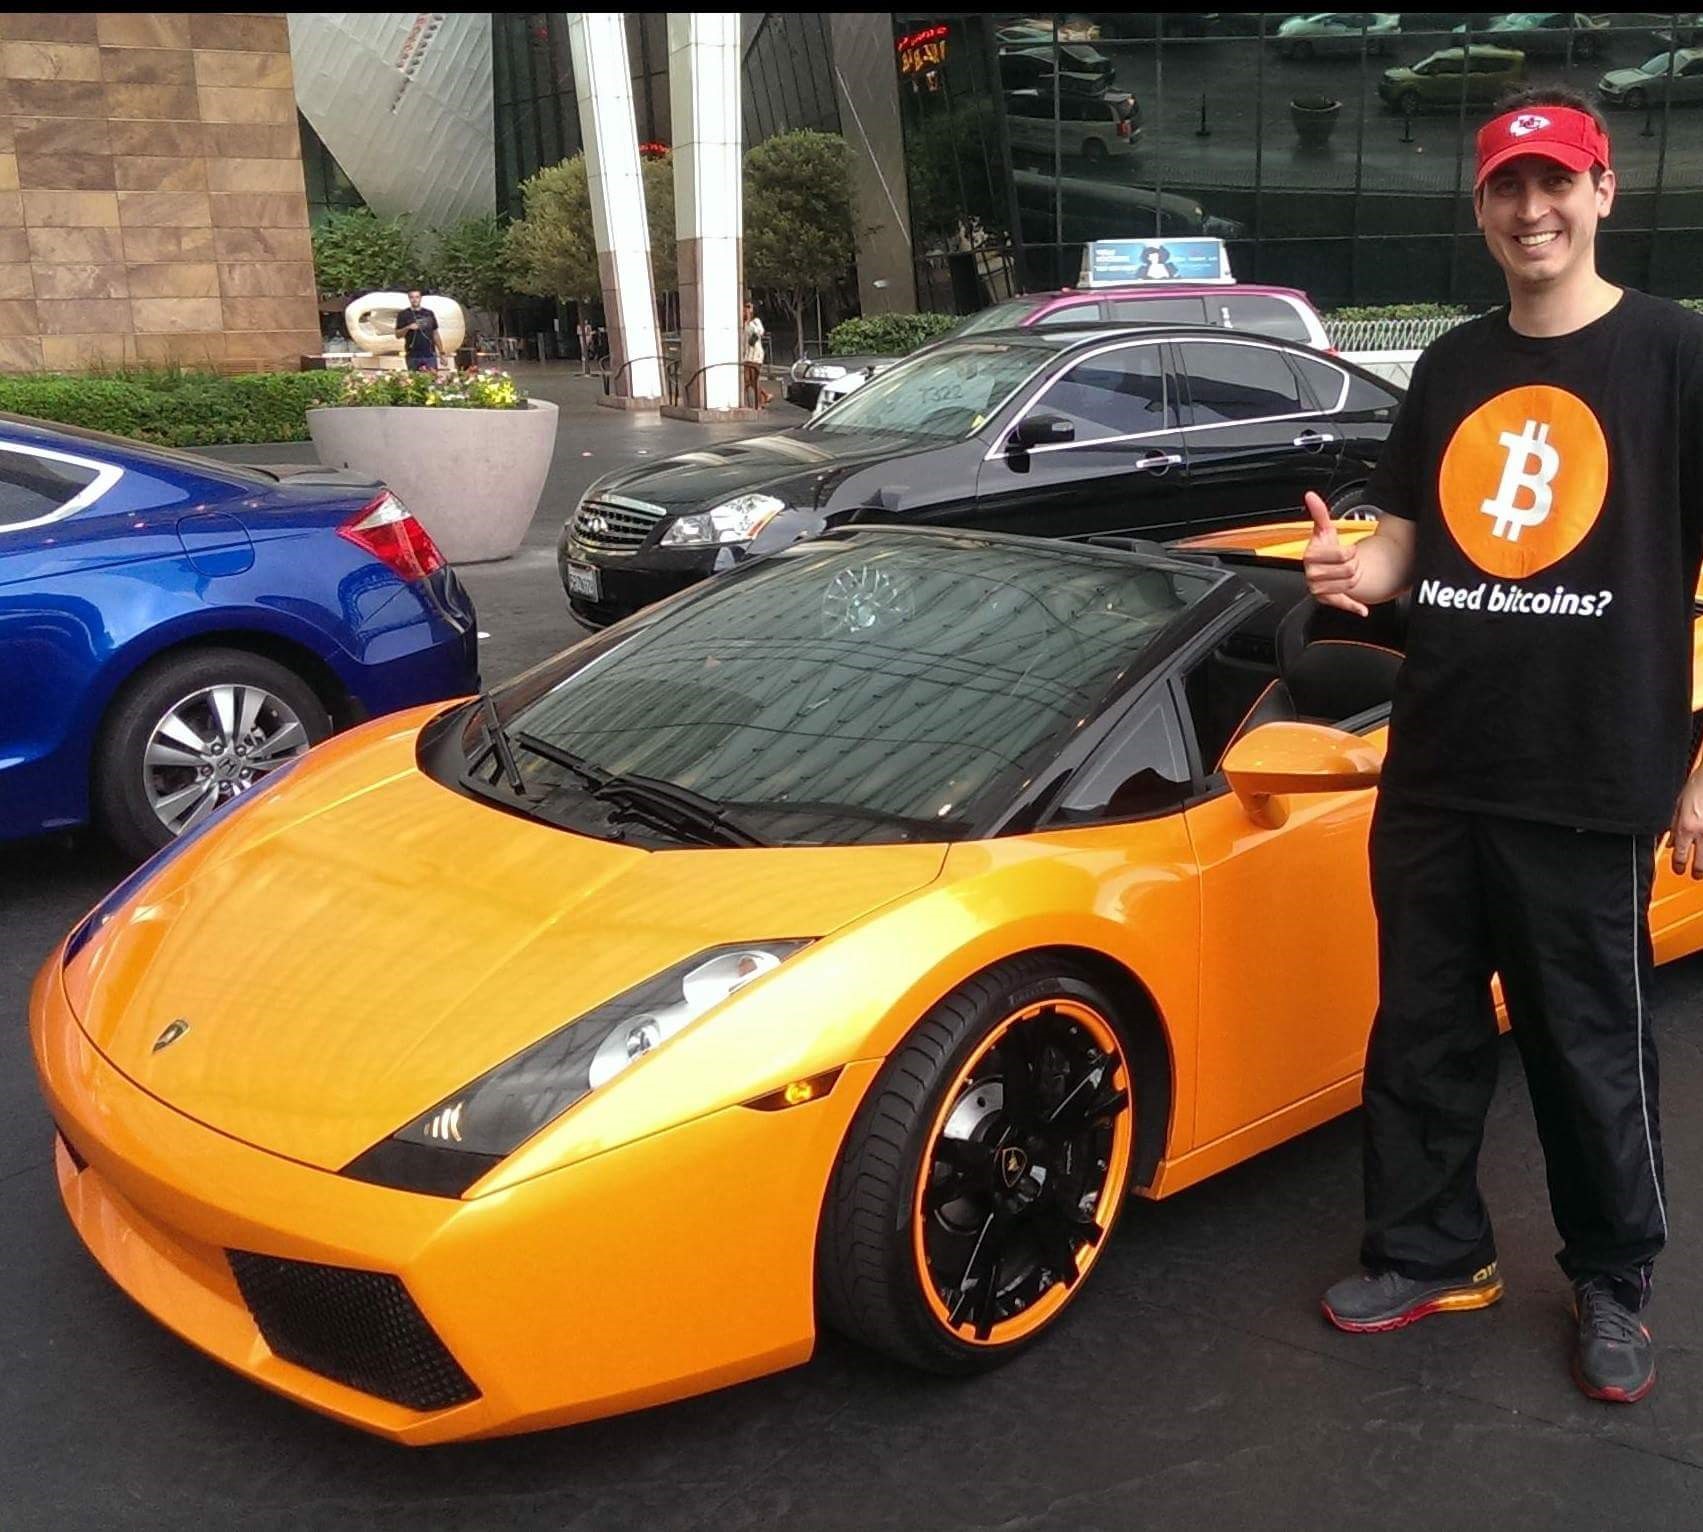 Bitcoin milyonerleri Lamborghini aldı, şirket satış rekoru kırdı